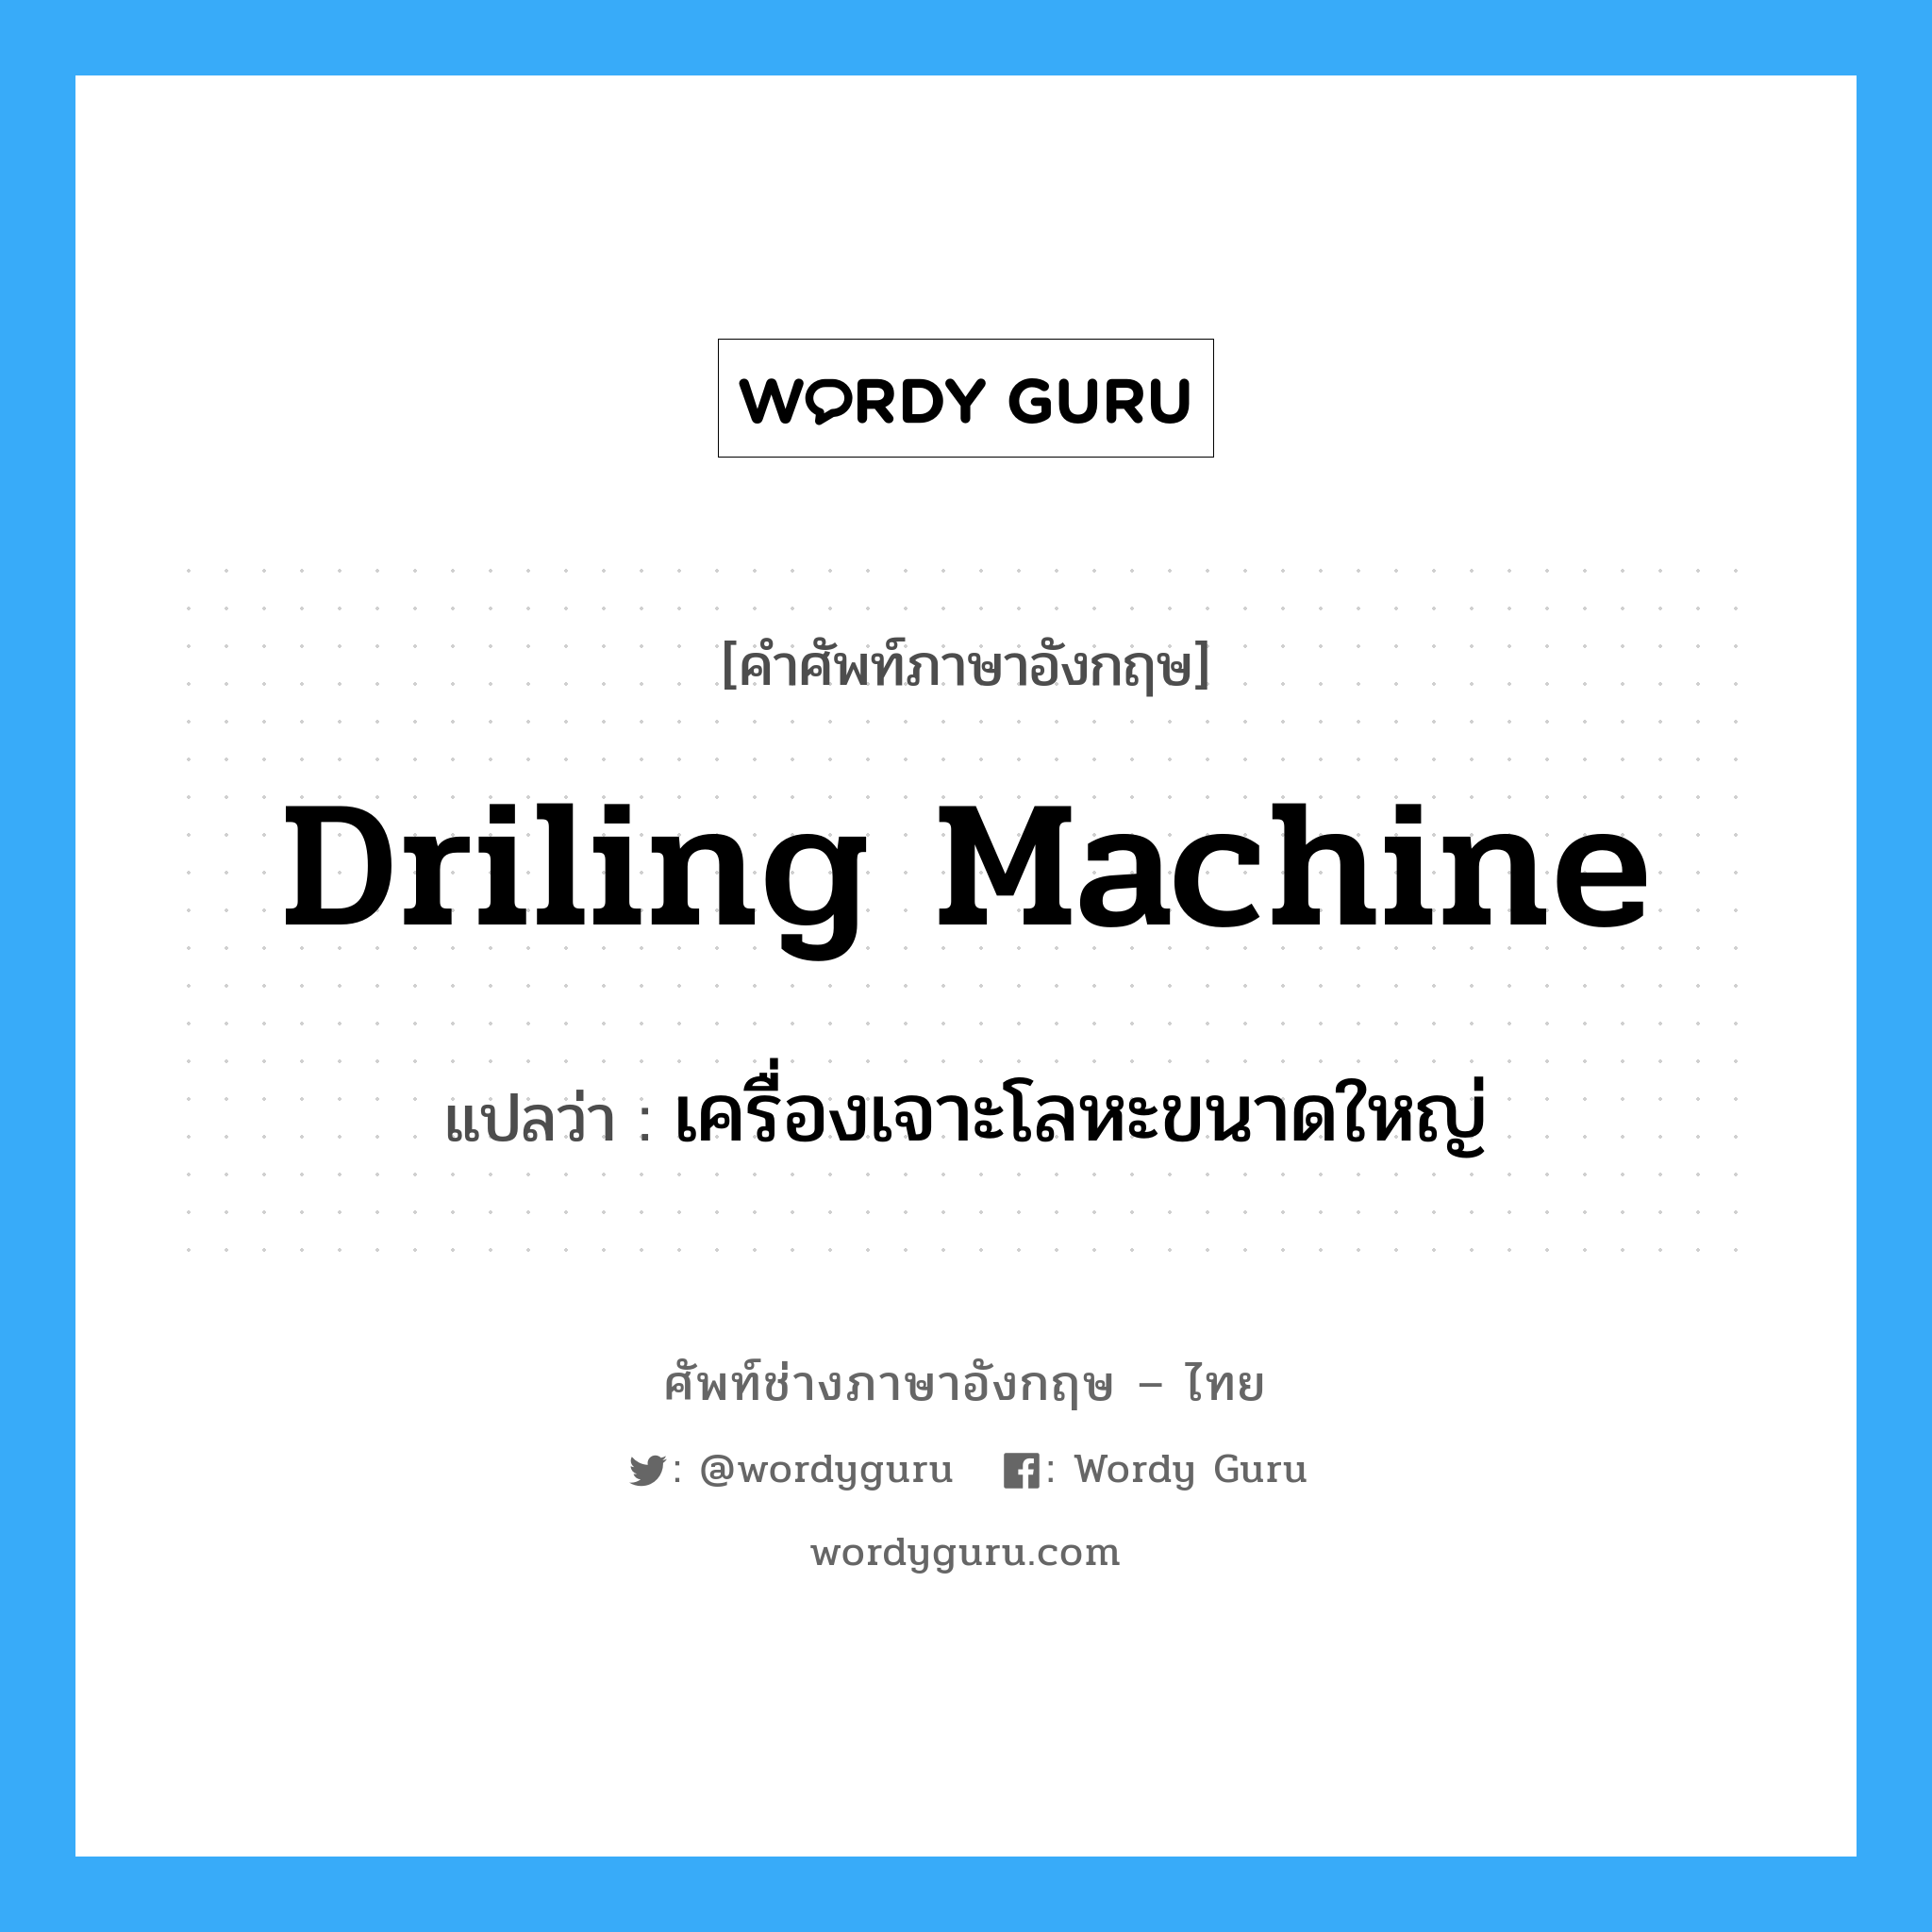 เครื่องเจาะโลหะขนาดใหญ่ ภาษาอังกฤษ?, คำศัพท์ช่างภาษาอังกฤษ - ไทย เครื่องเจาะโลหะขนาดใหญ่ คำศัพท์ภาษาอังกฤษ เครื่องเจาะโลหะขนาดใหญ่ แปลว่า driling machine